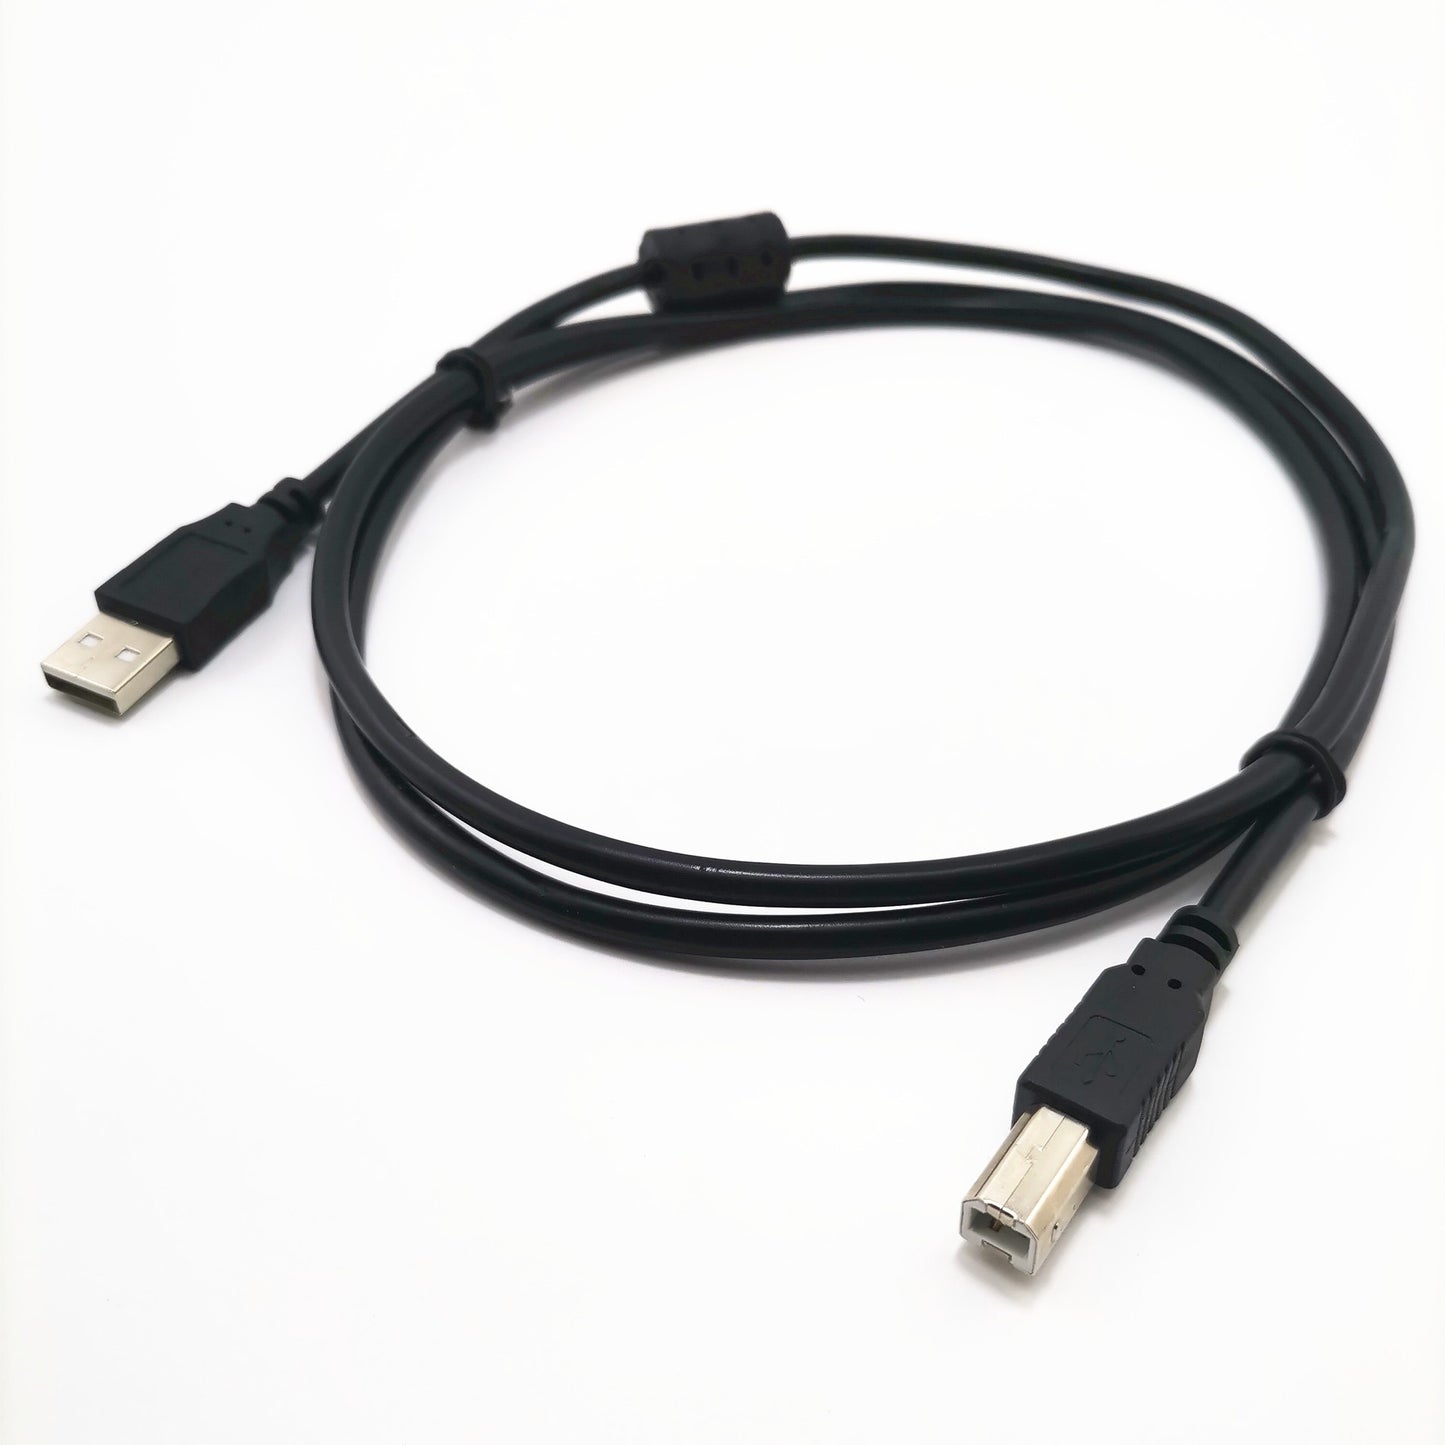 USB-A 2.0 naar USB-B 2.0 Printerkabel Zwart in verschillende afmetingen | Basic USB-A naar USB-B 2.0 Kabel